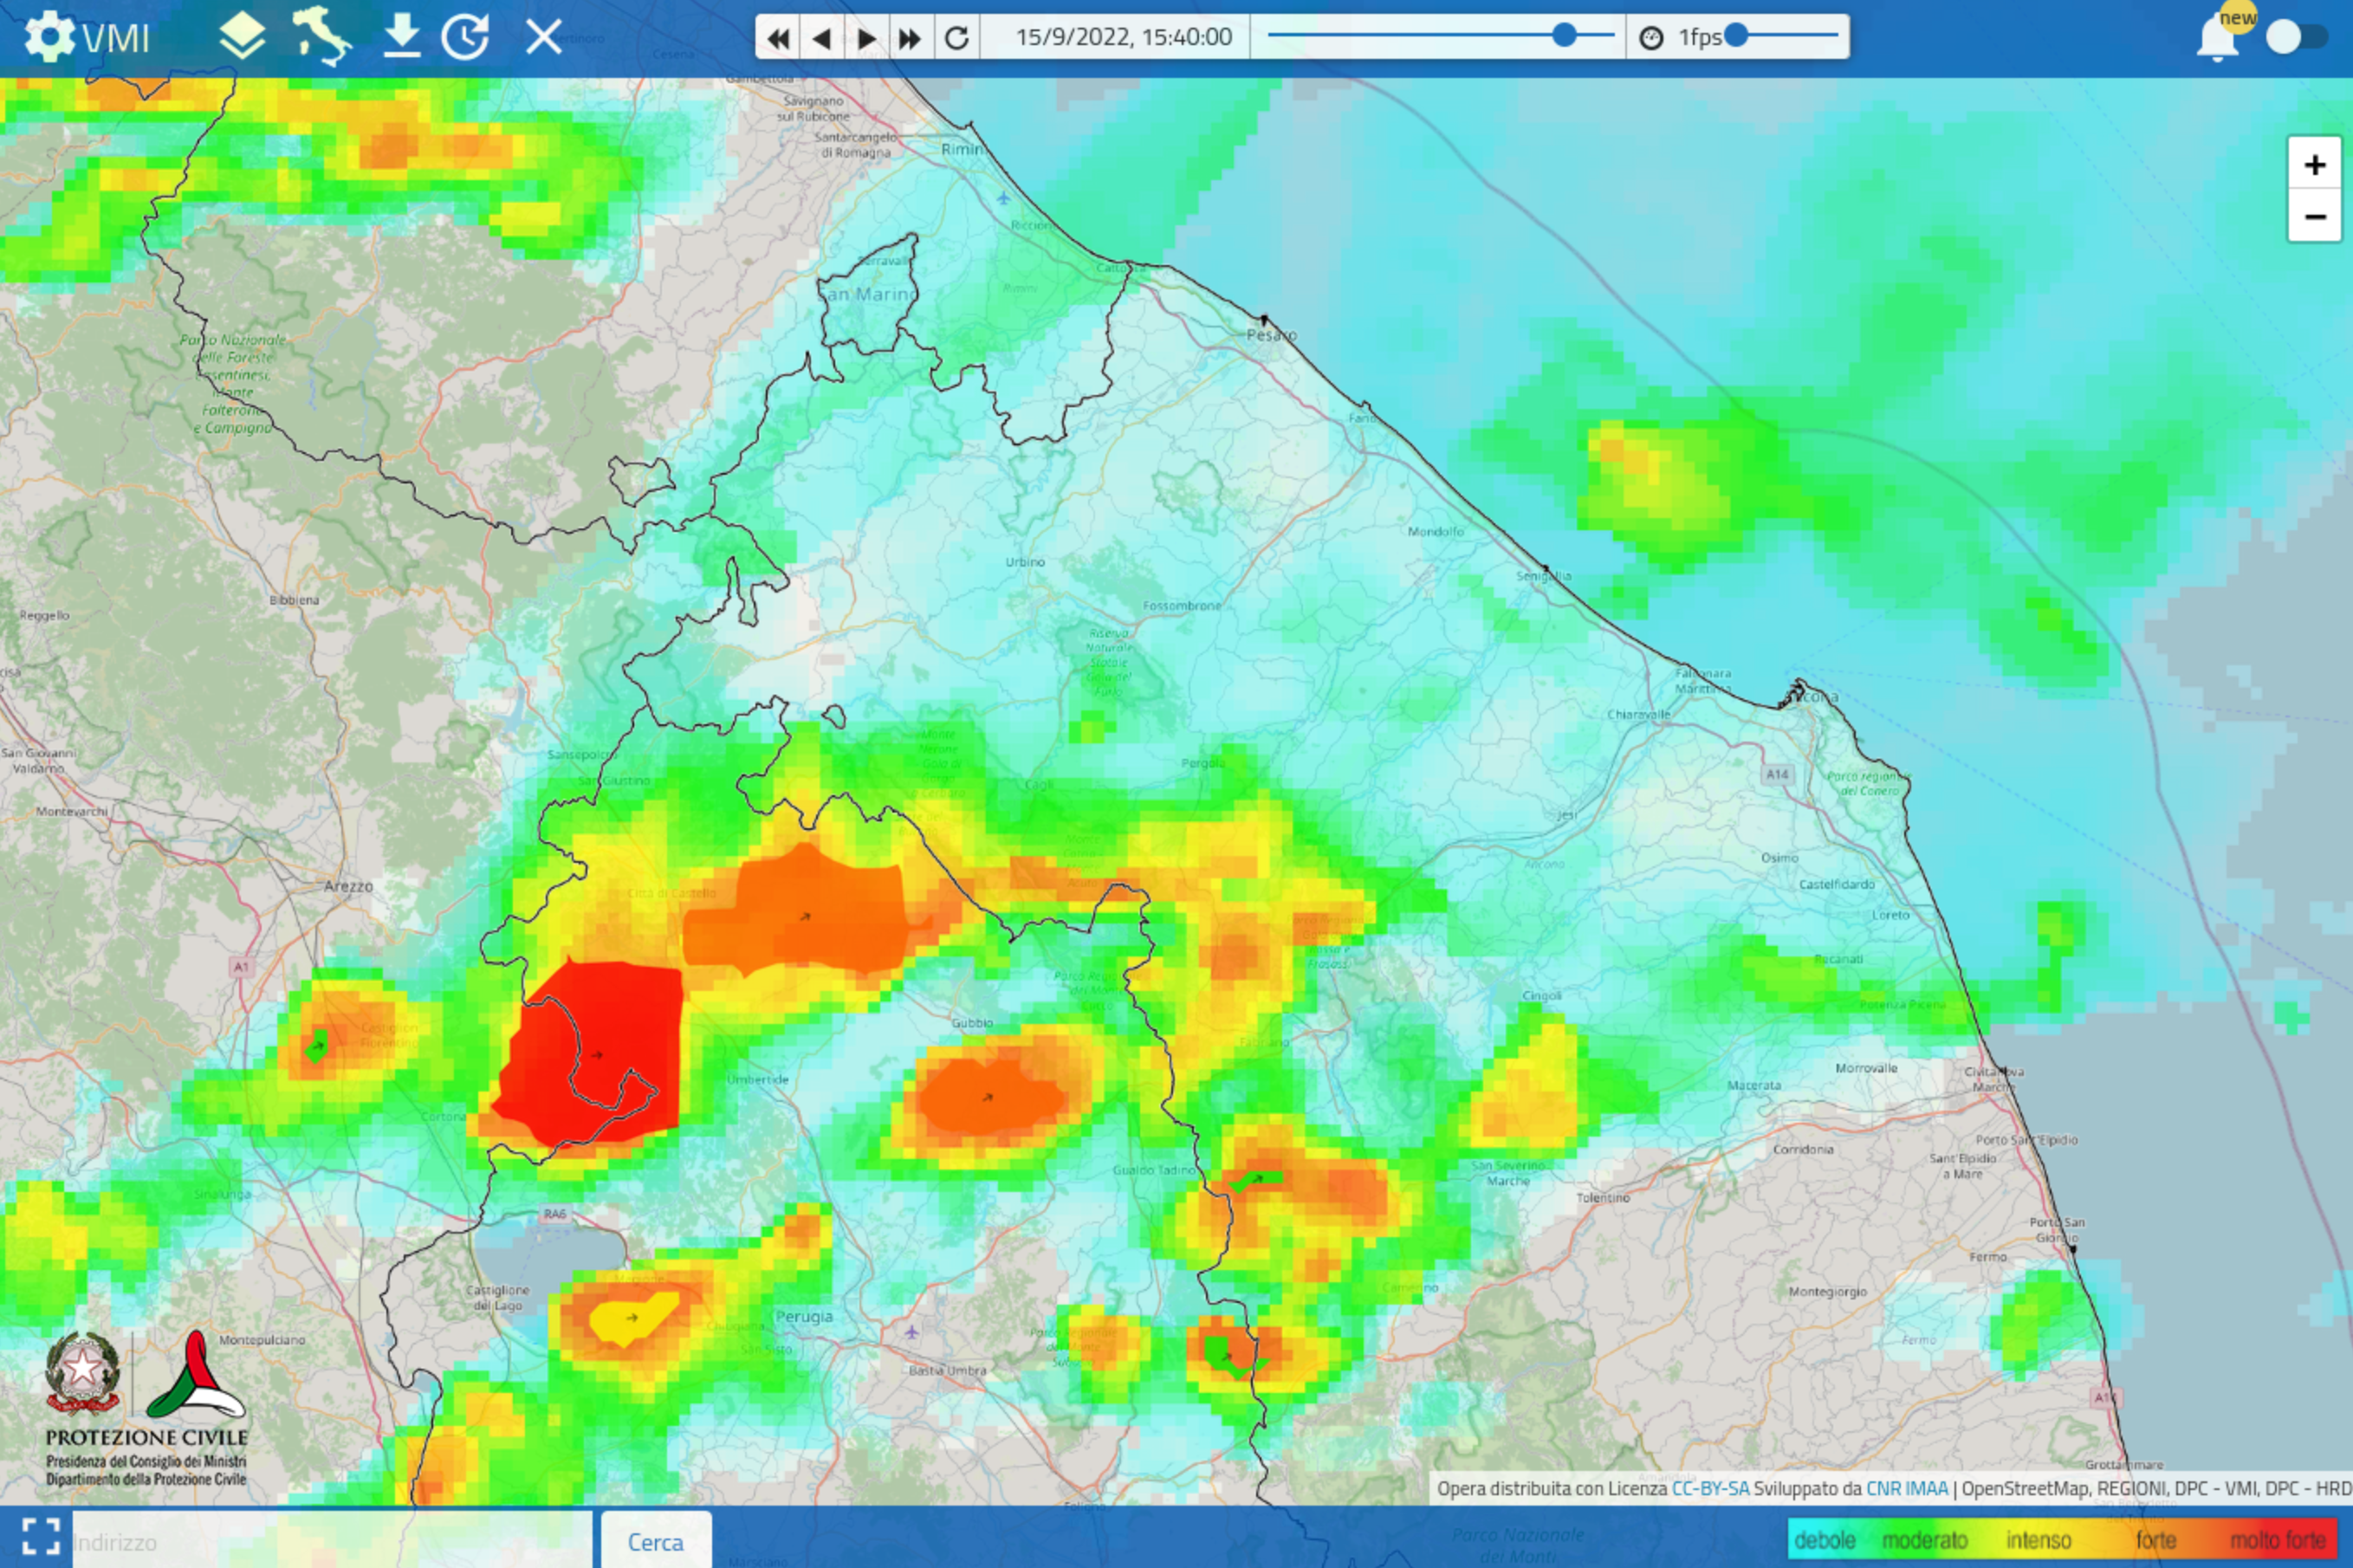 Meteo ASSAM Regione Marche - immagine radar prot civile 1